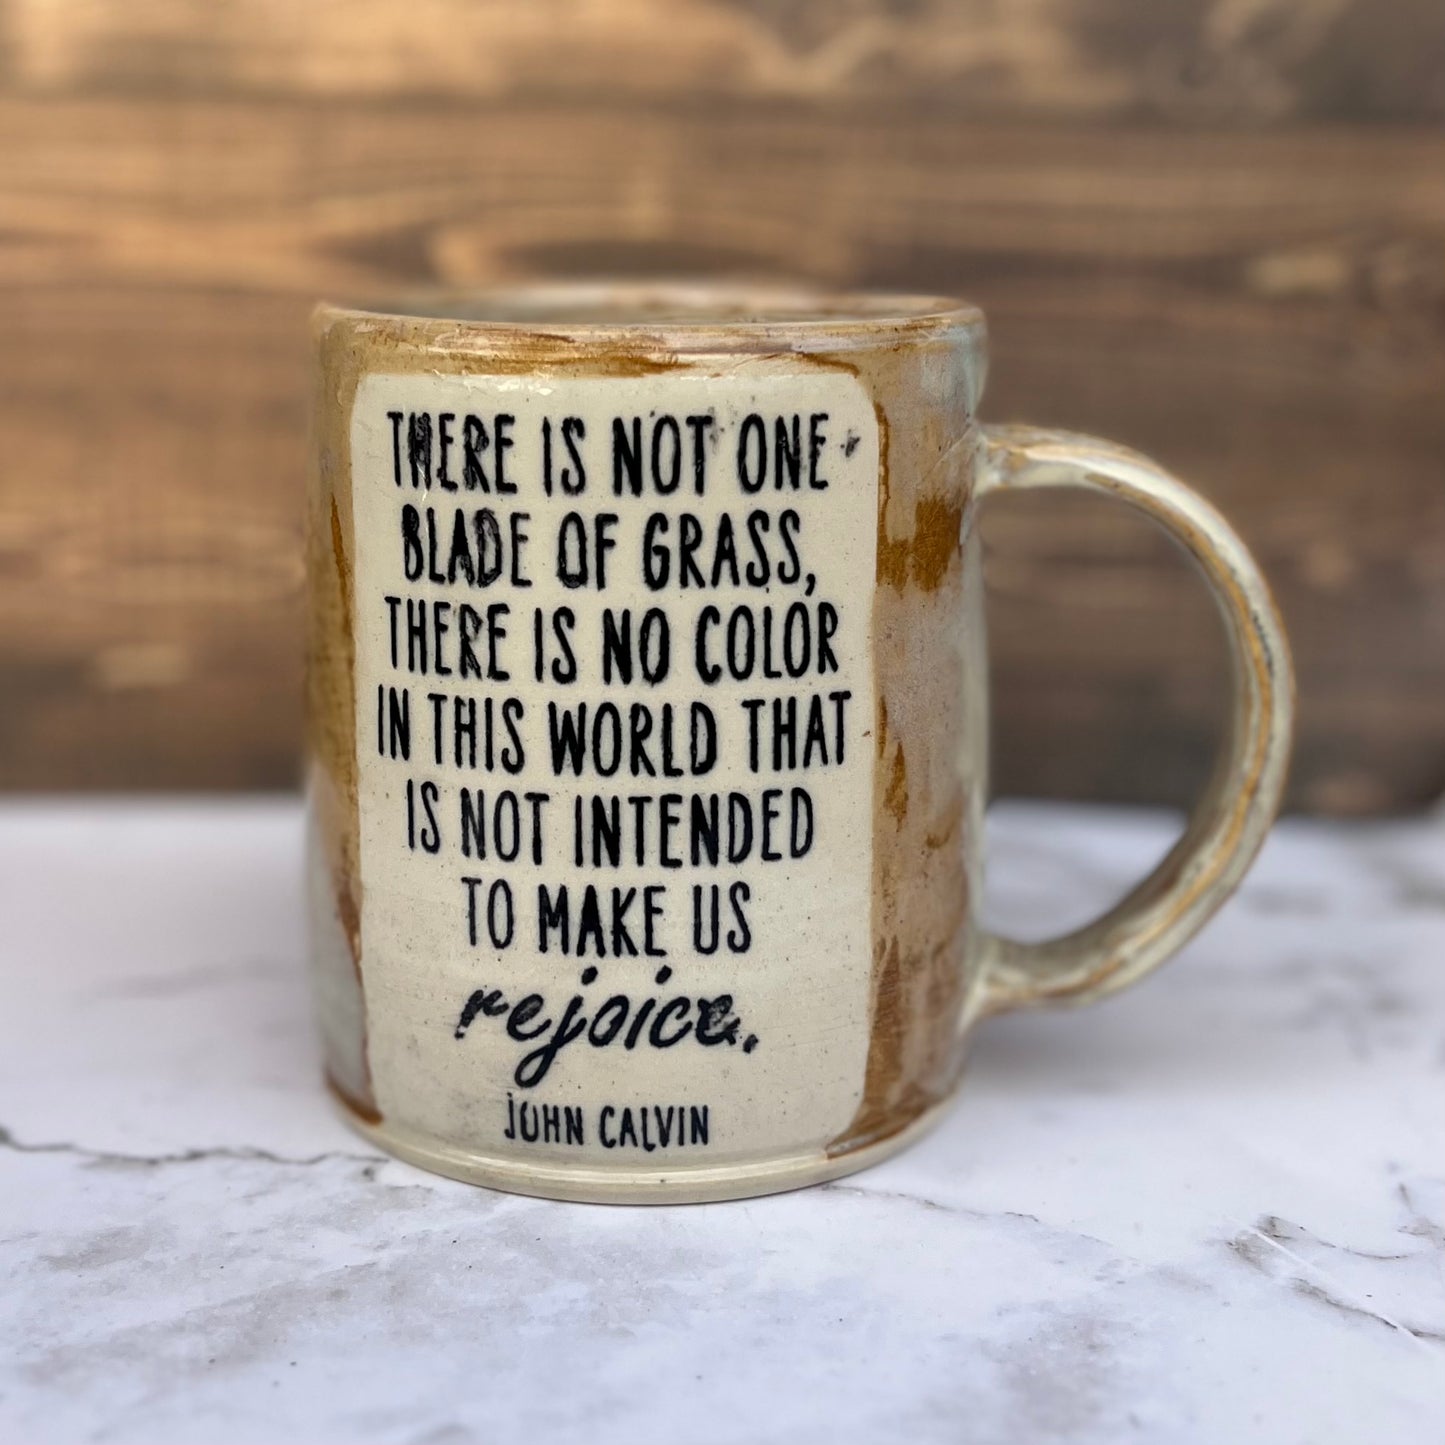 Calvin “Rejoice” Mug